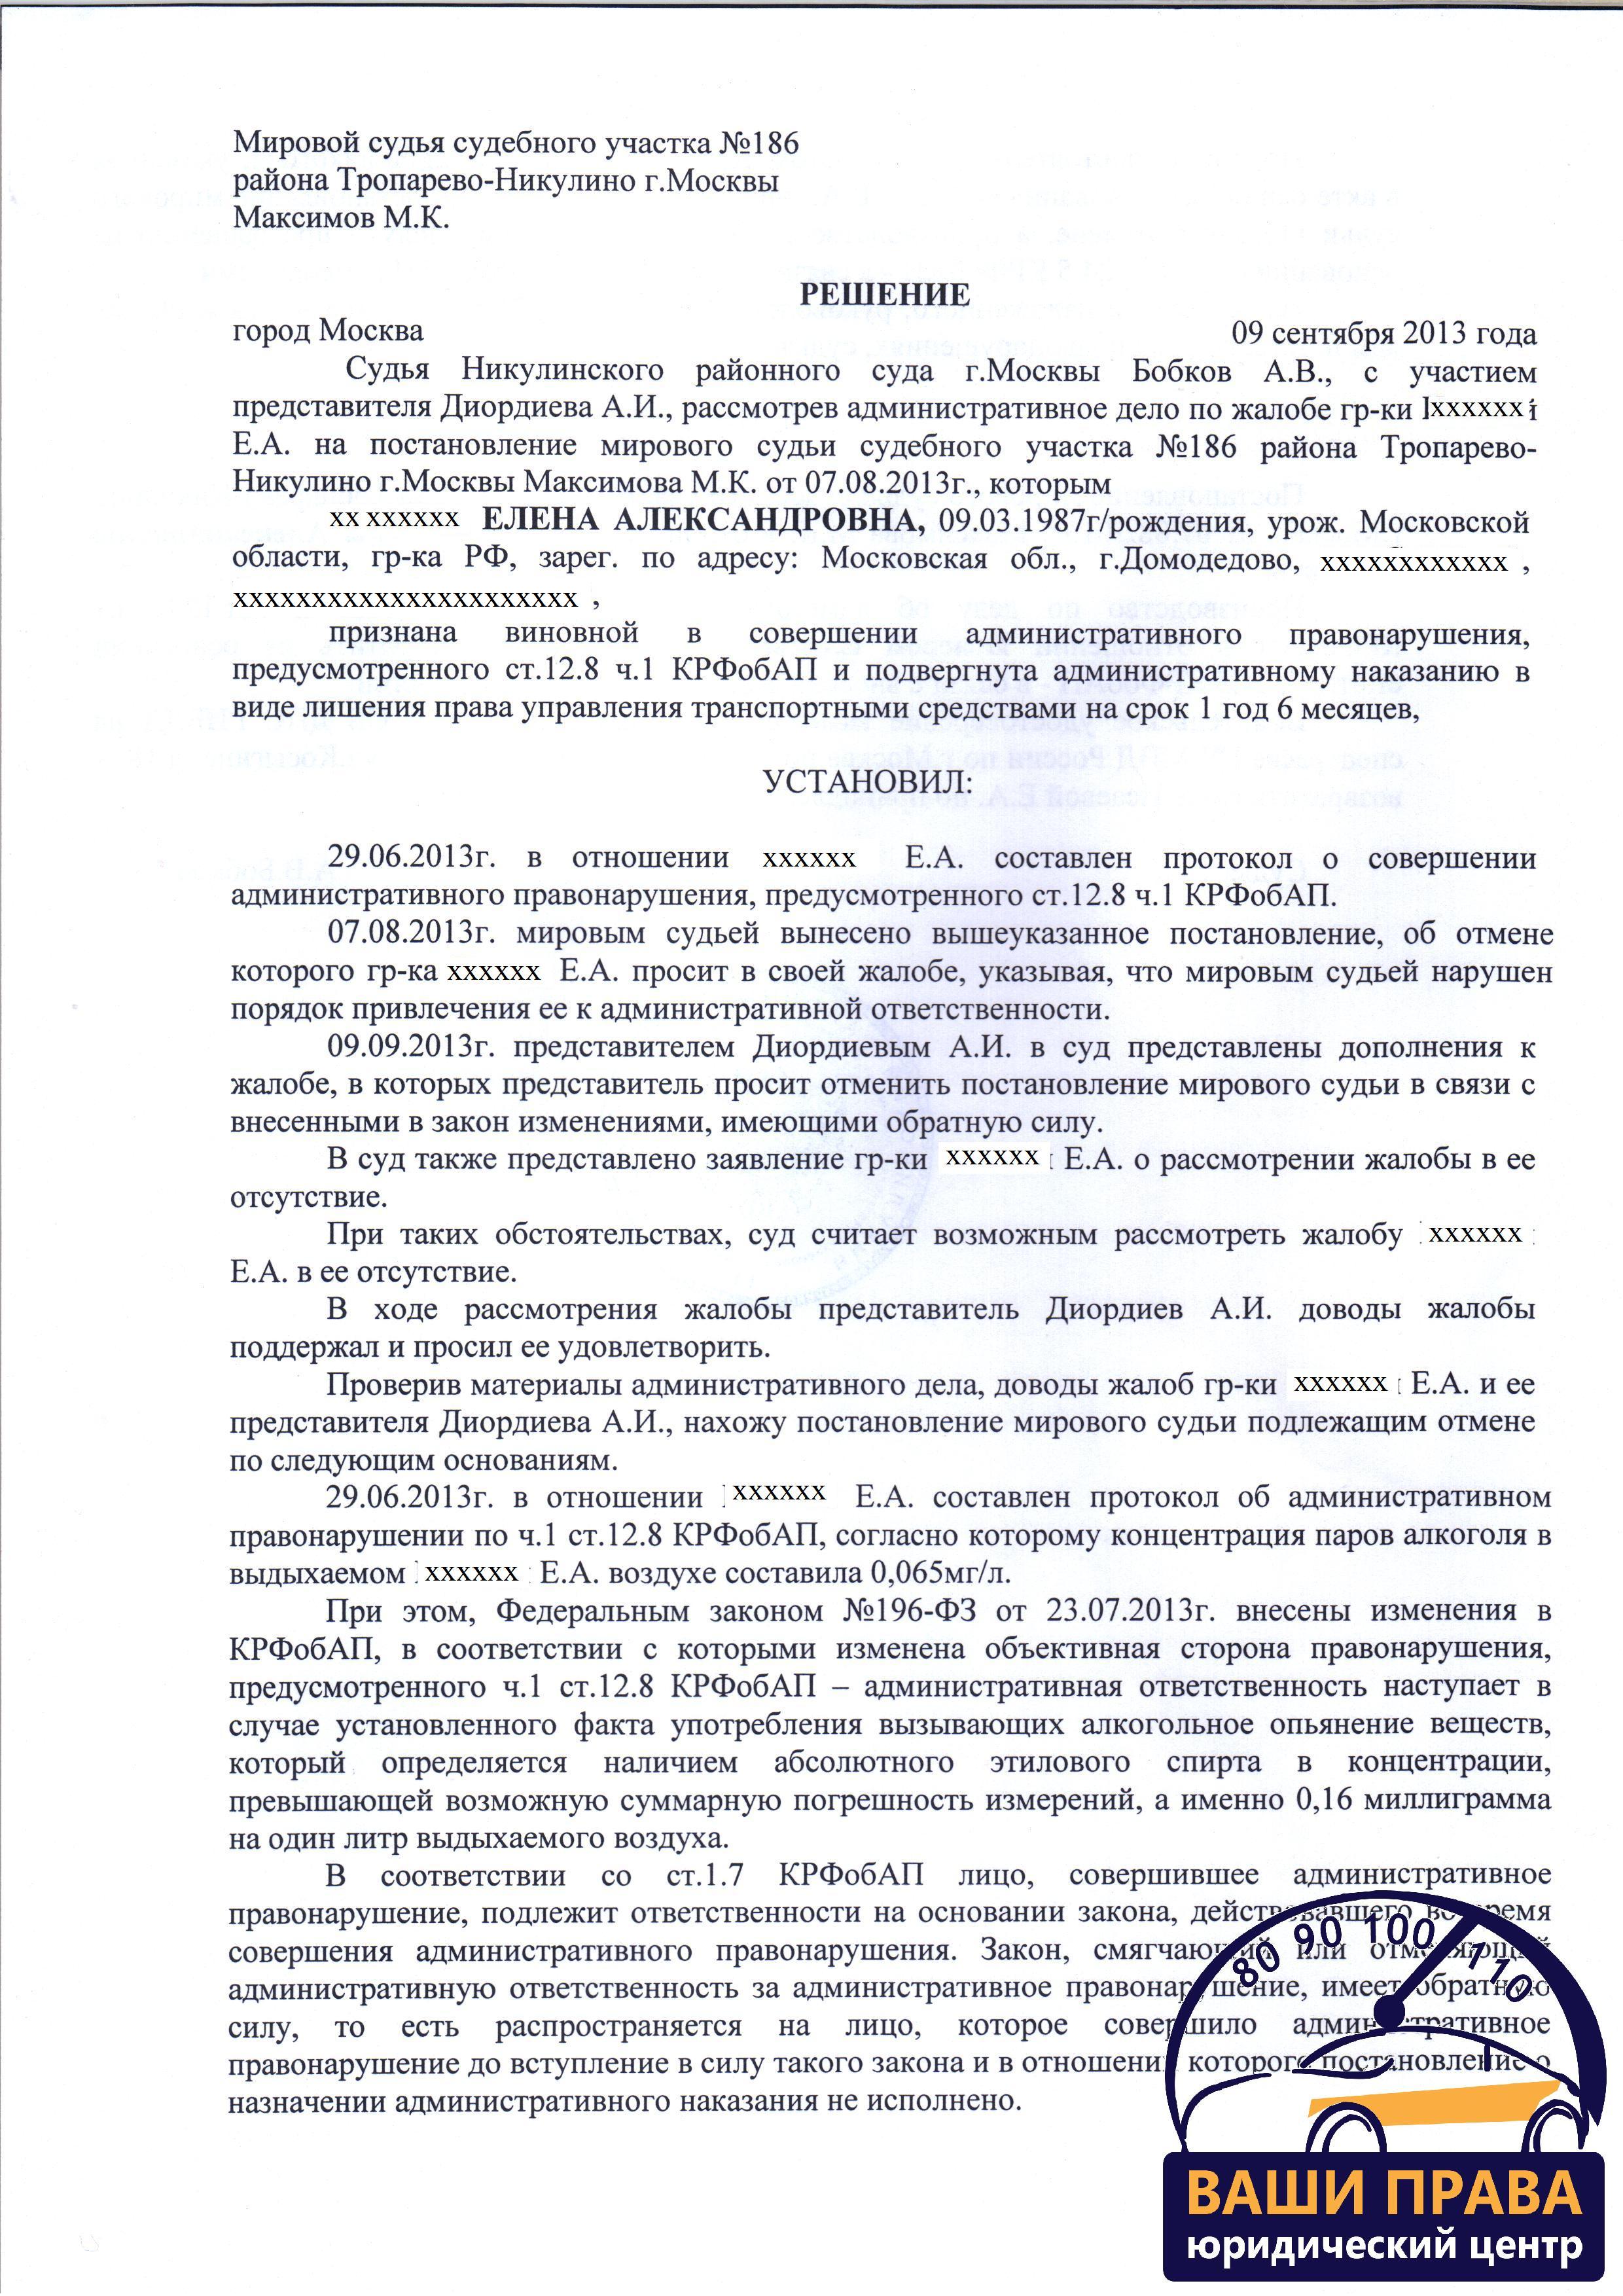 9 сентября 2013 года, г. Москва, Никулинский районный суд (л. 1)